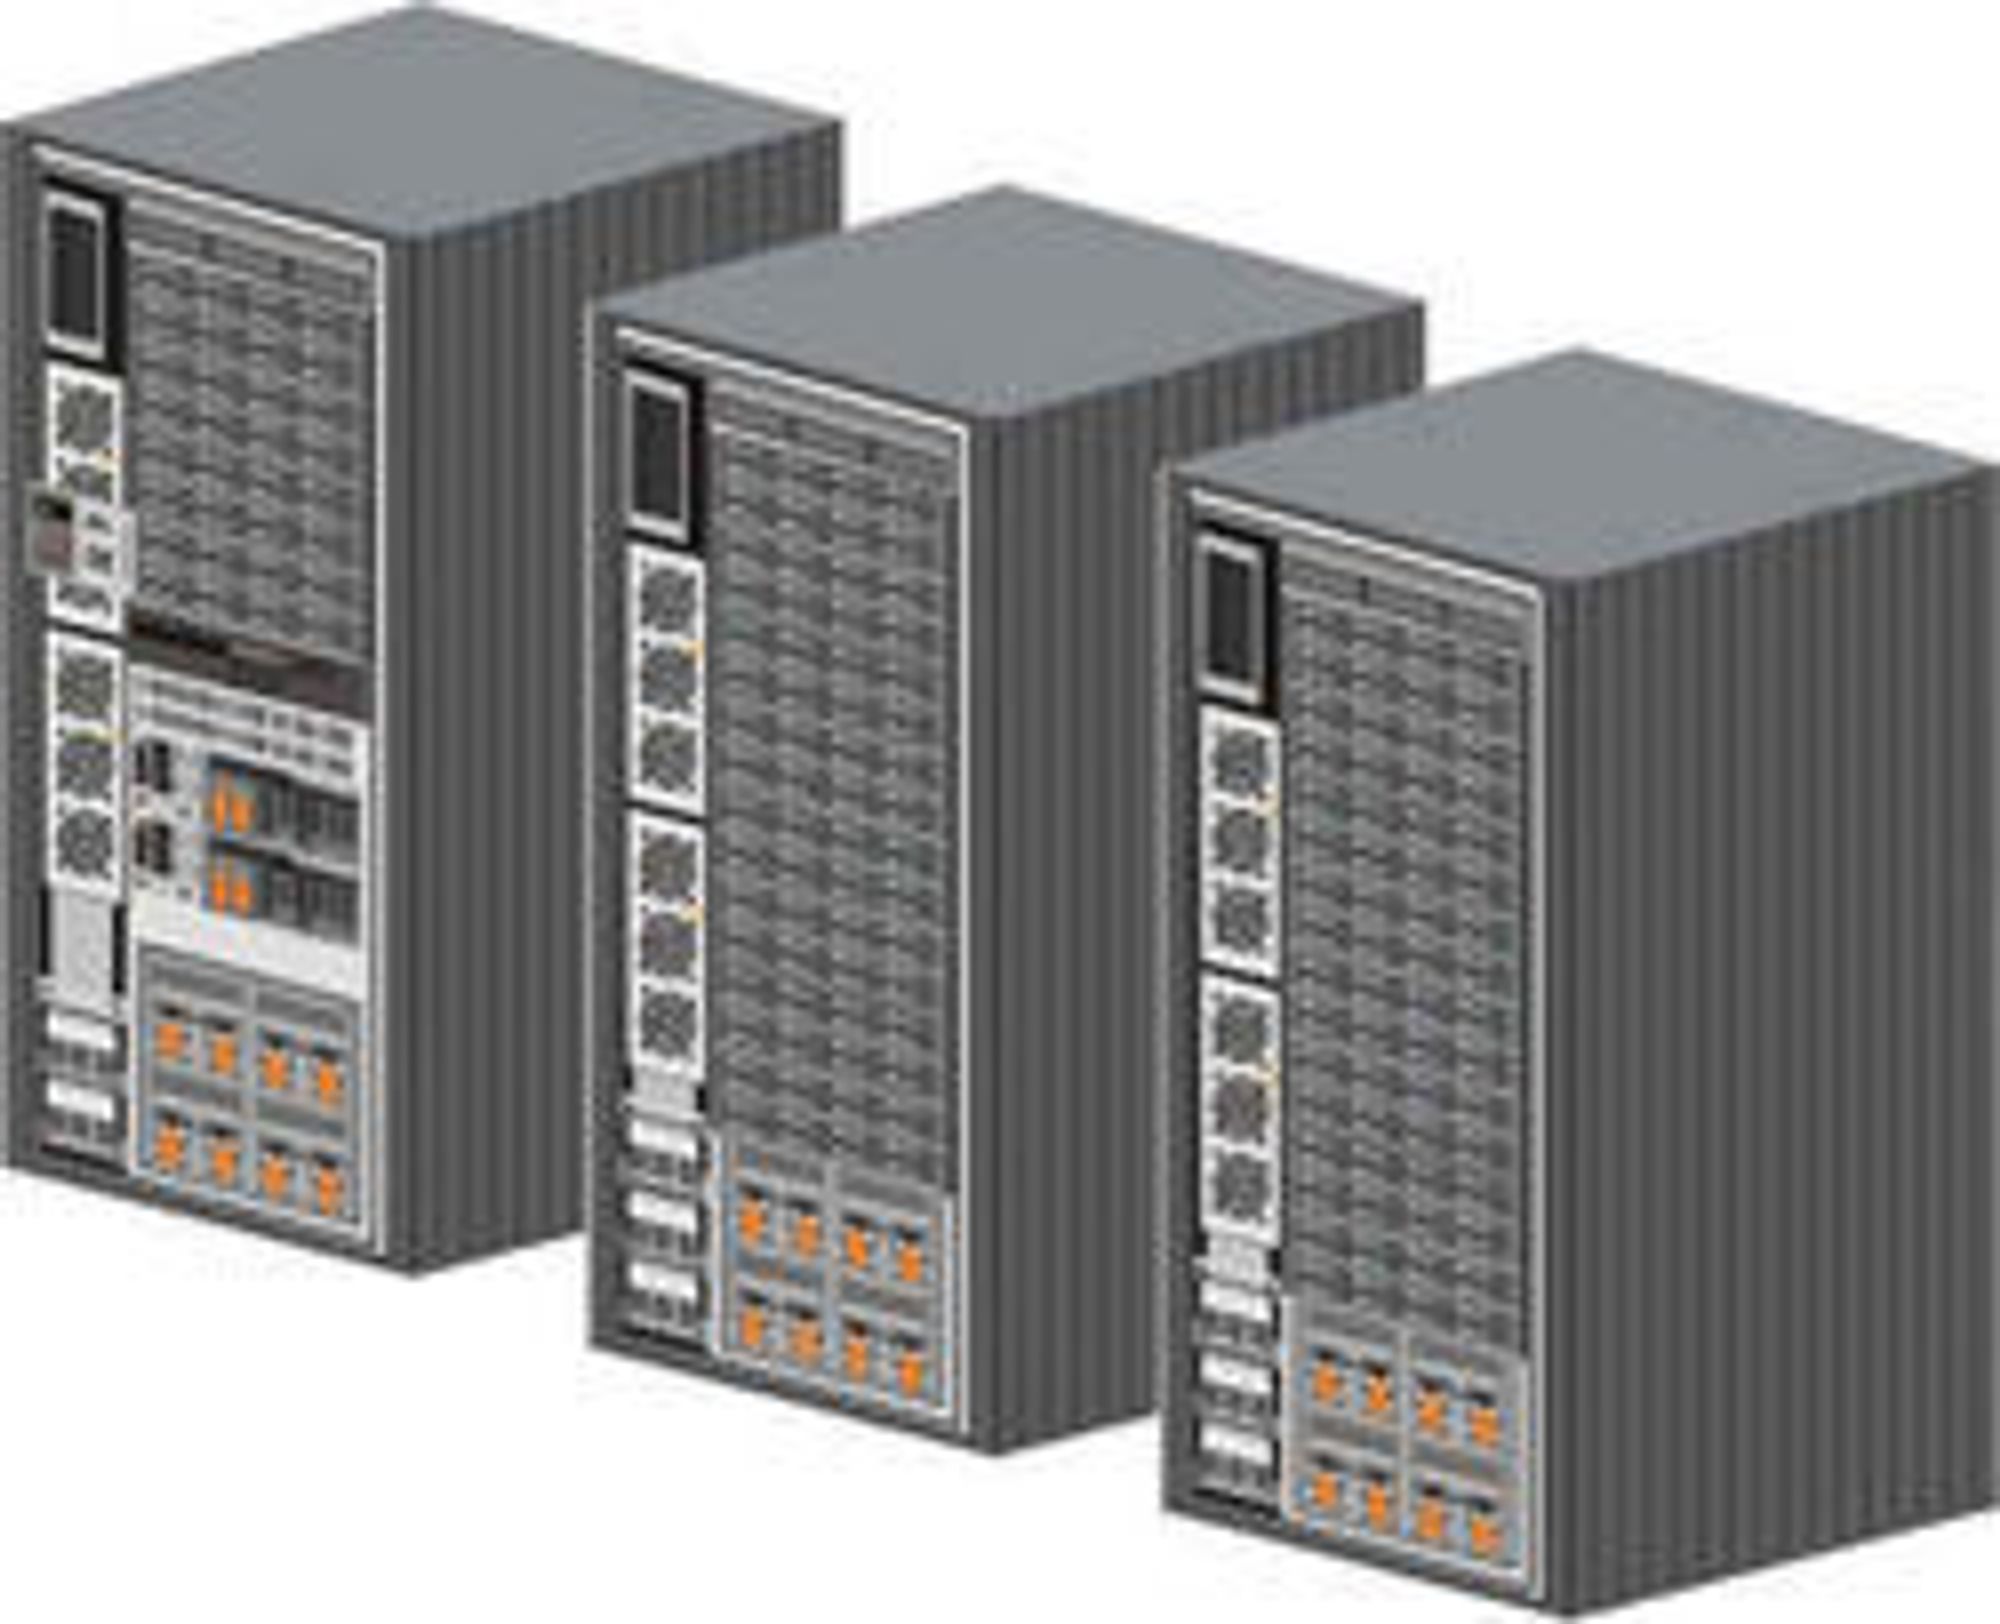 IBM DS8300, fullt utbygget til tre rack.